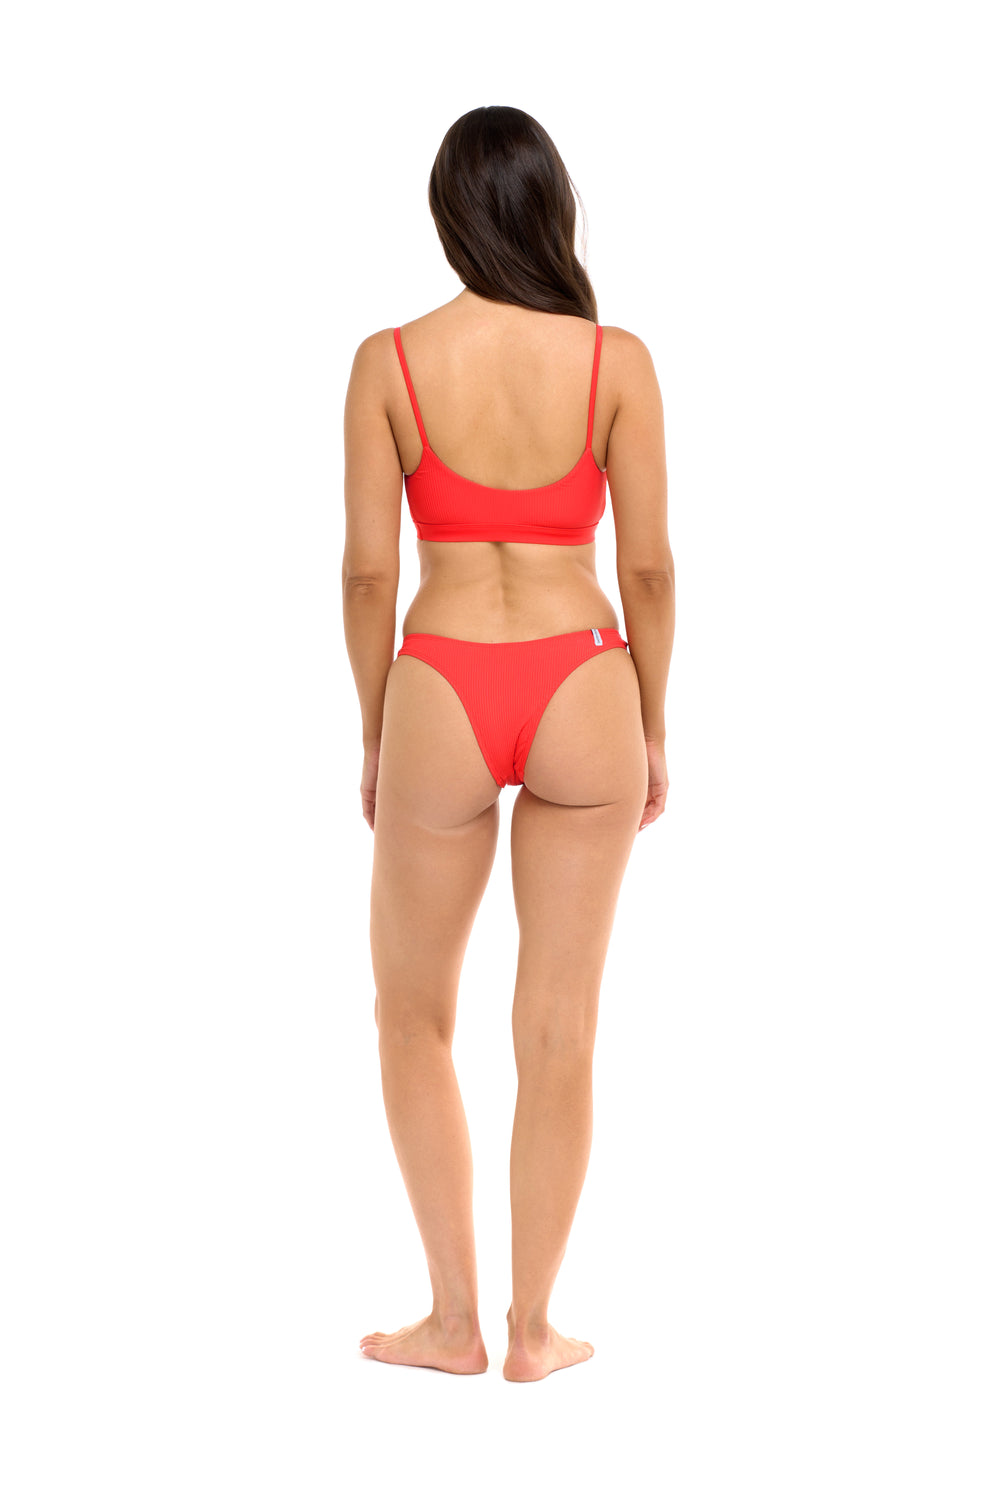 Body Glove Ibiza Dana High-Hip Bikini Bottom - Snapdragon